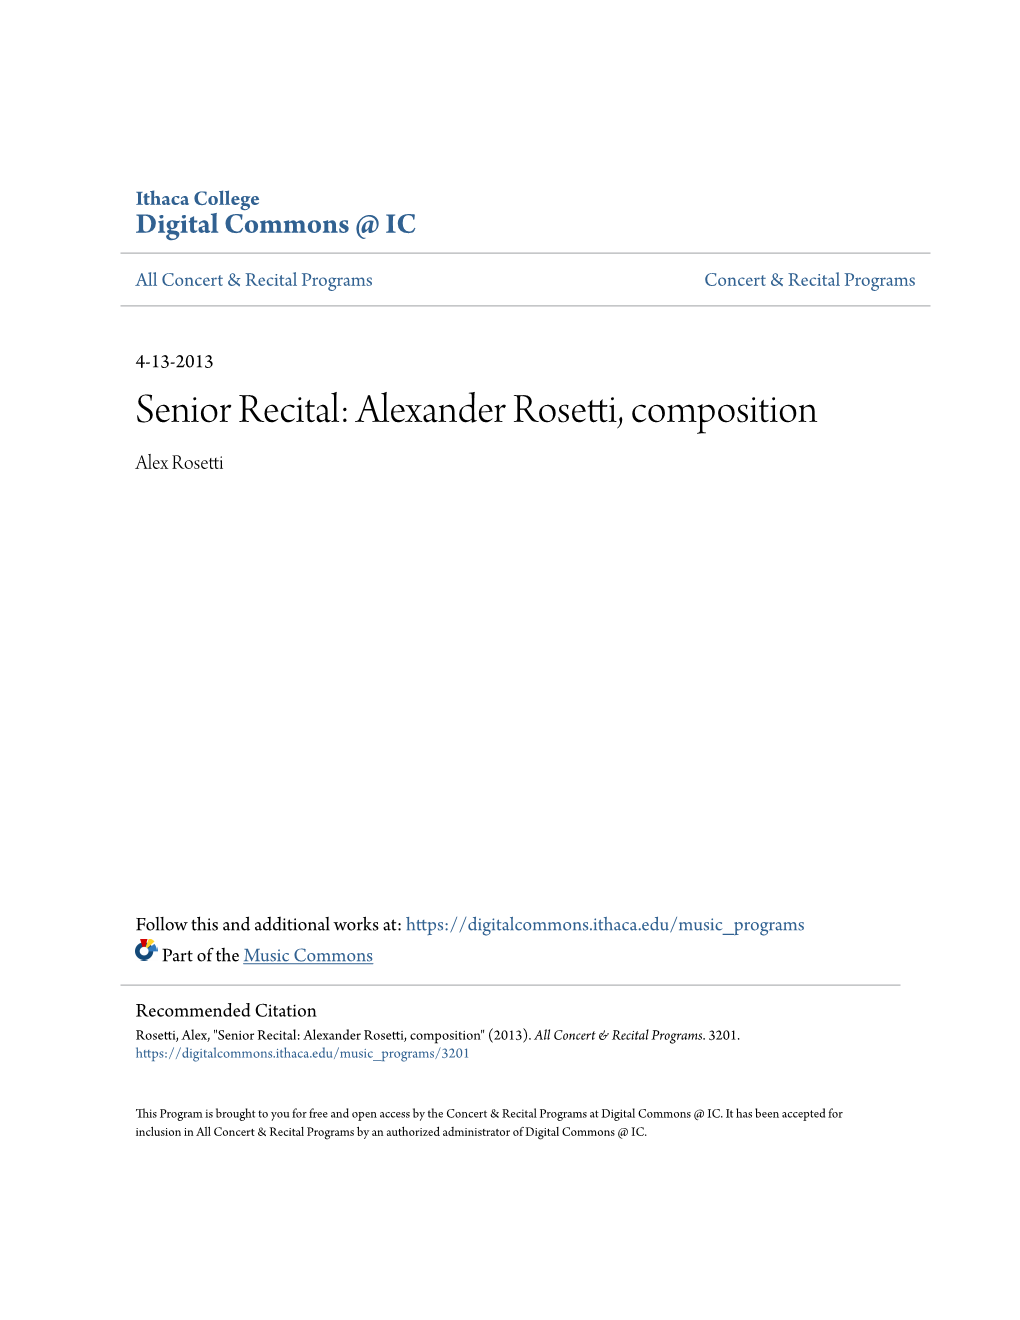 Alexander Rosetti, Composition Alex Rosetti